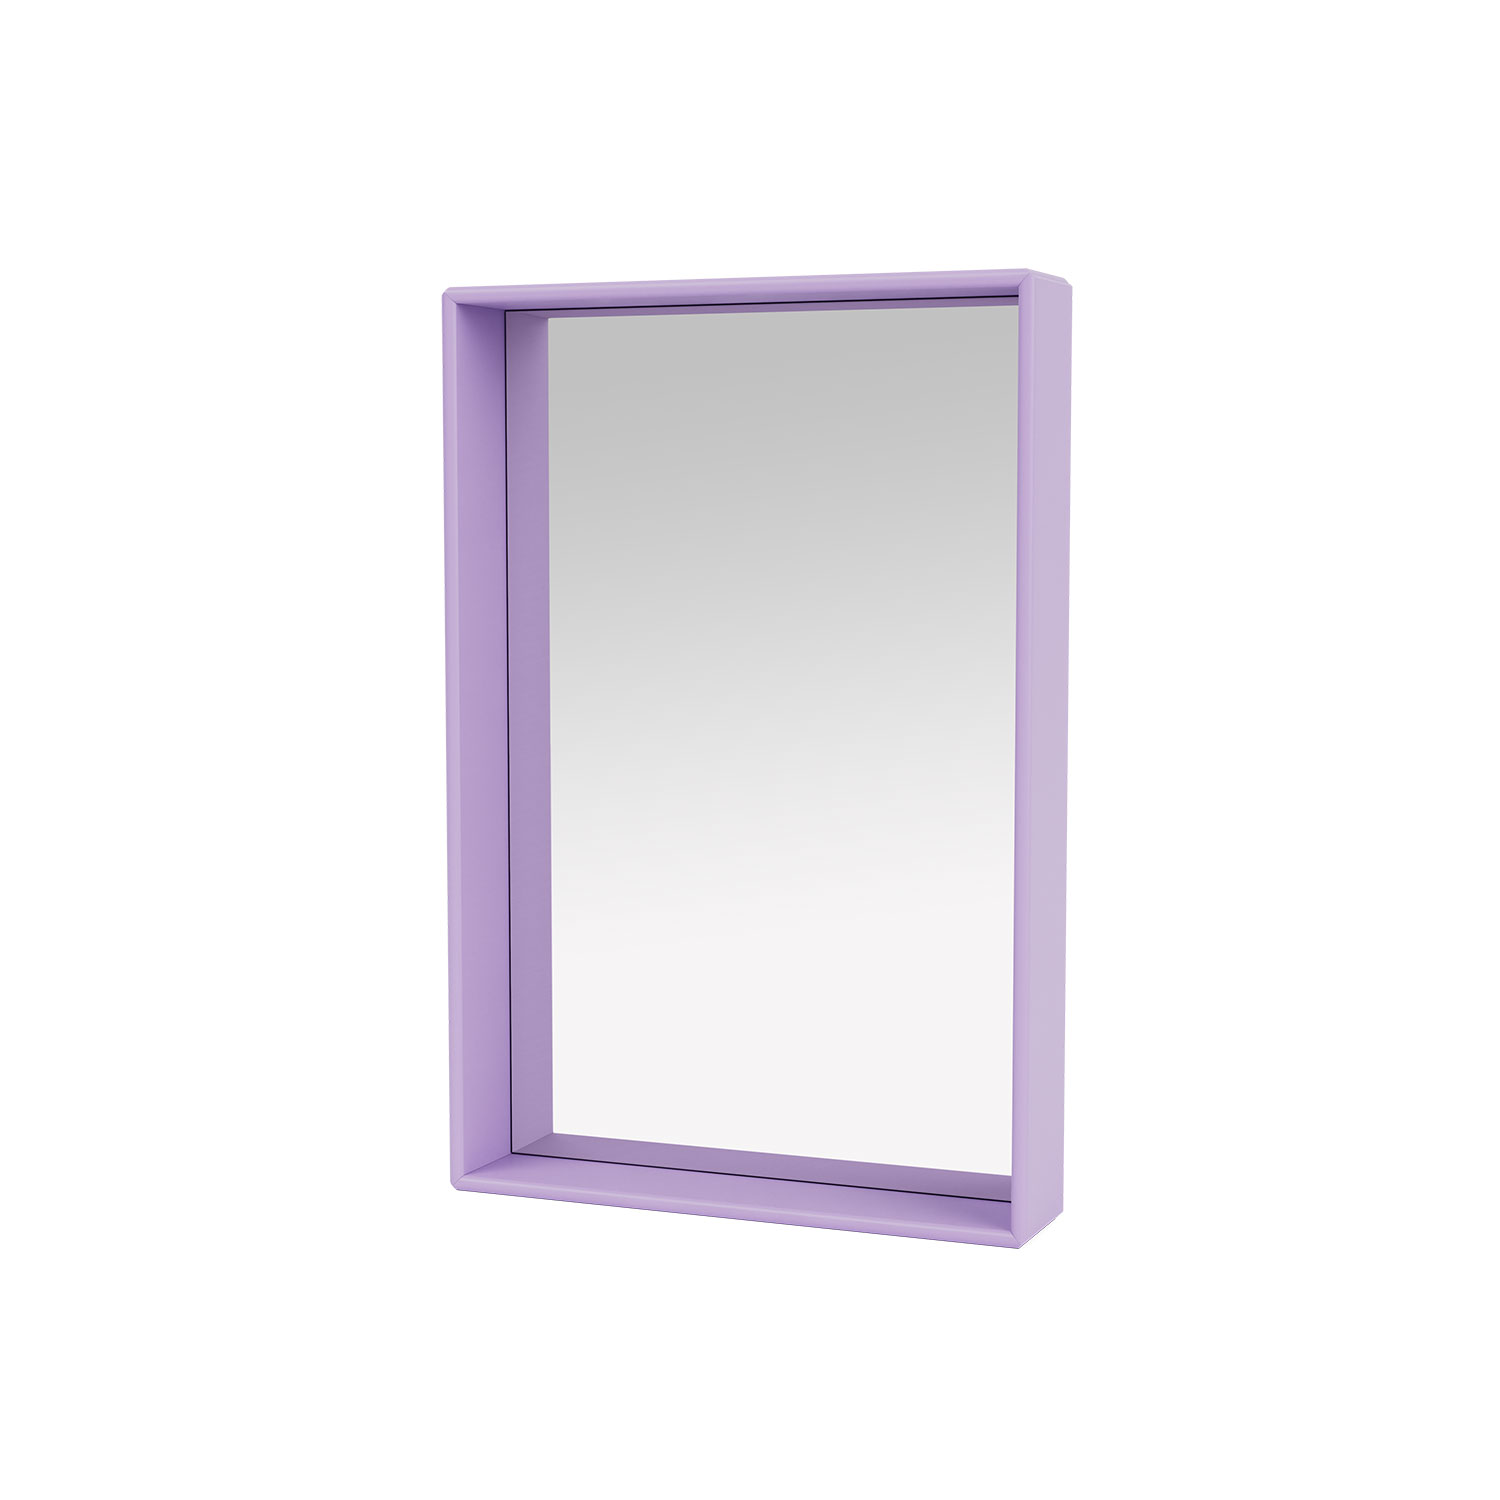 SHELFIE mirror with shelf, Iris